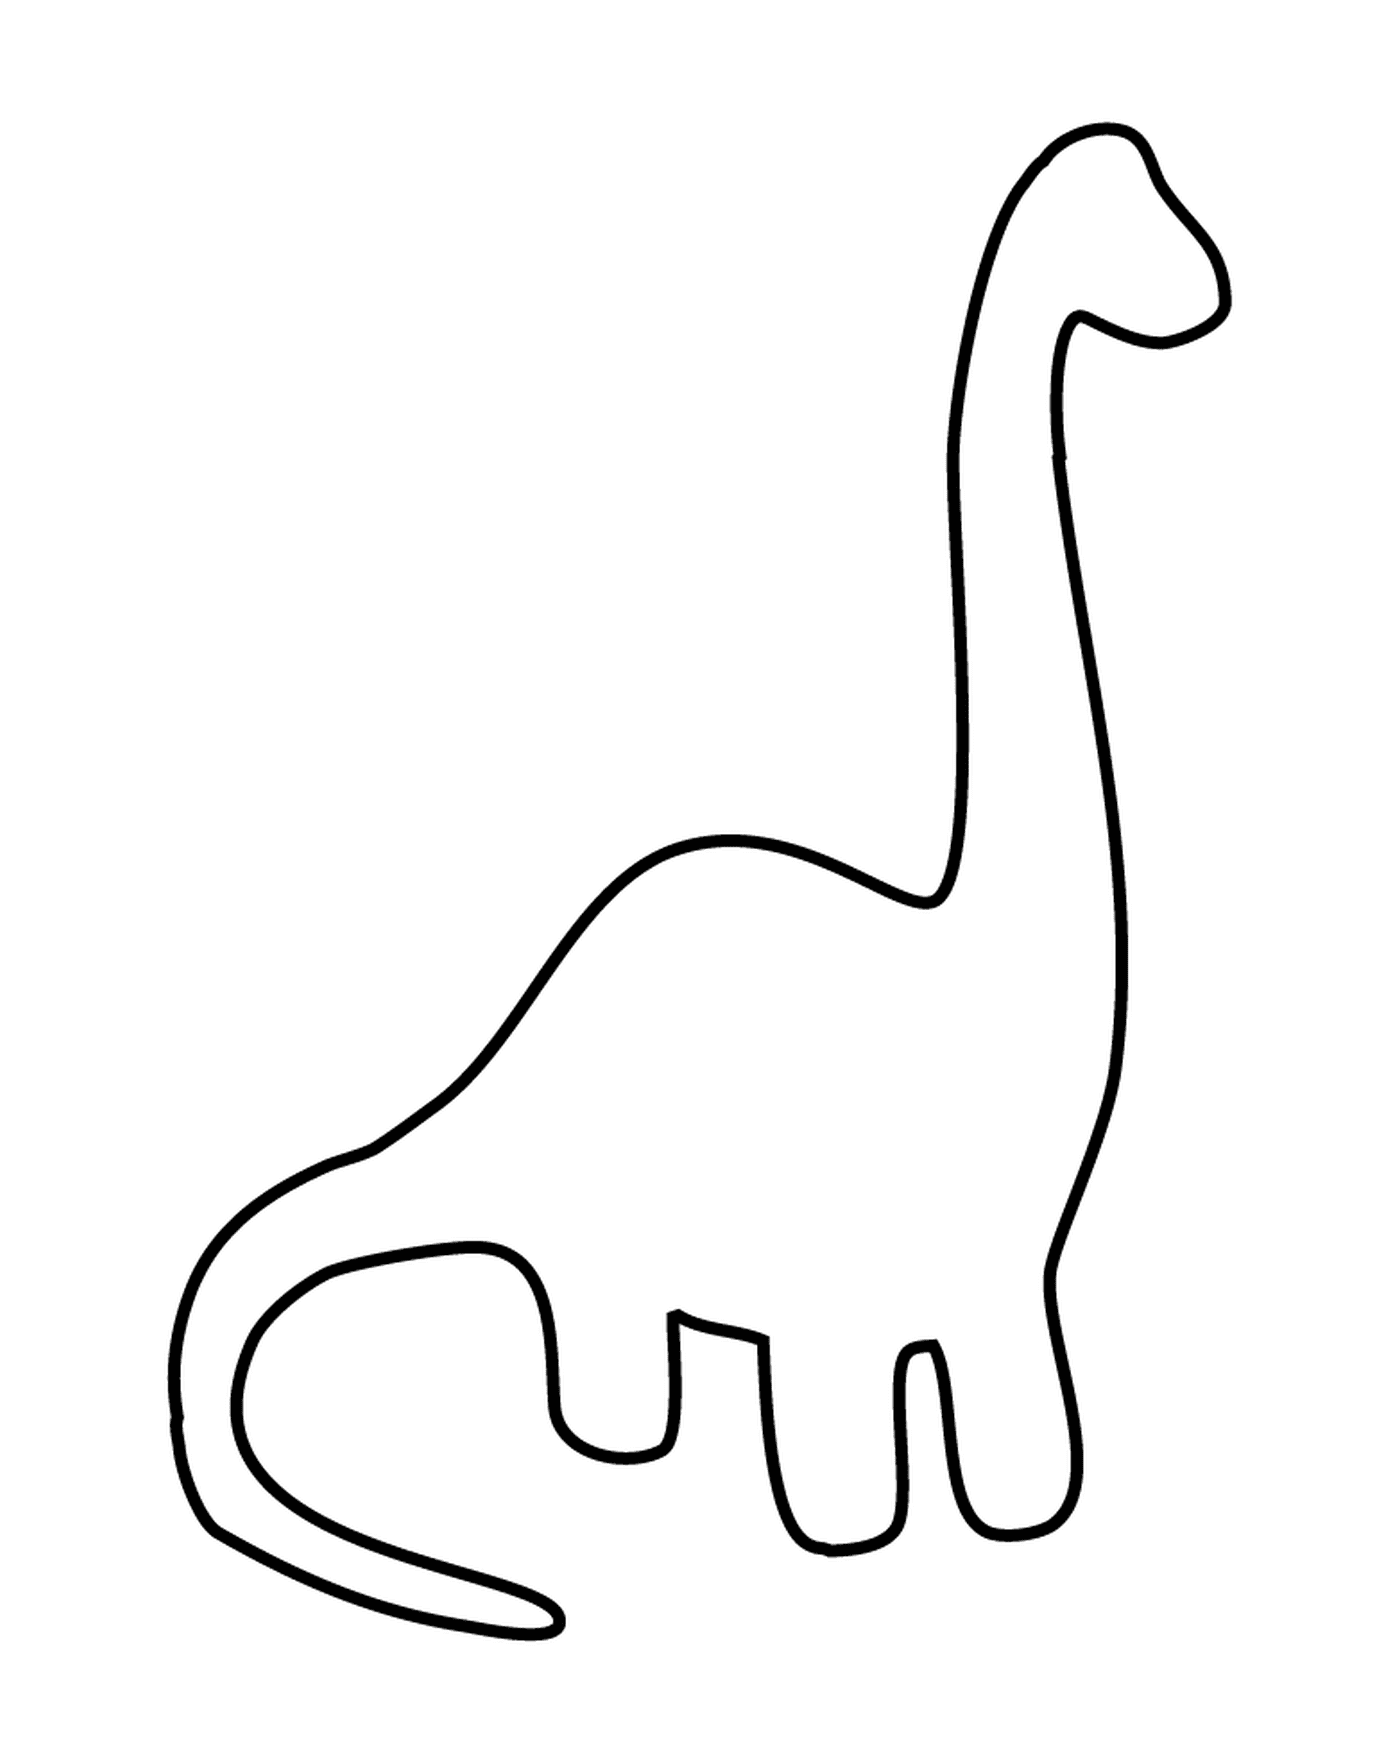  黑白恐龙提纲 